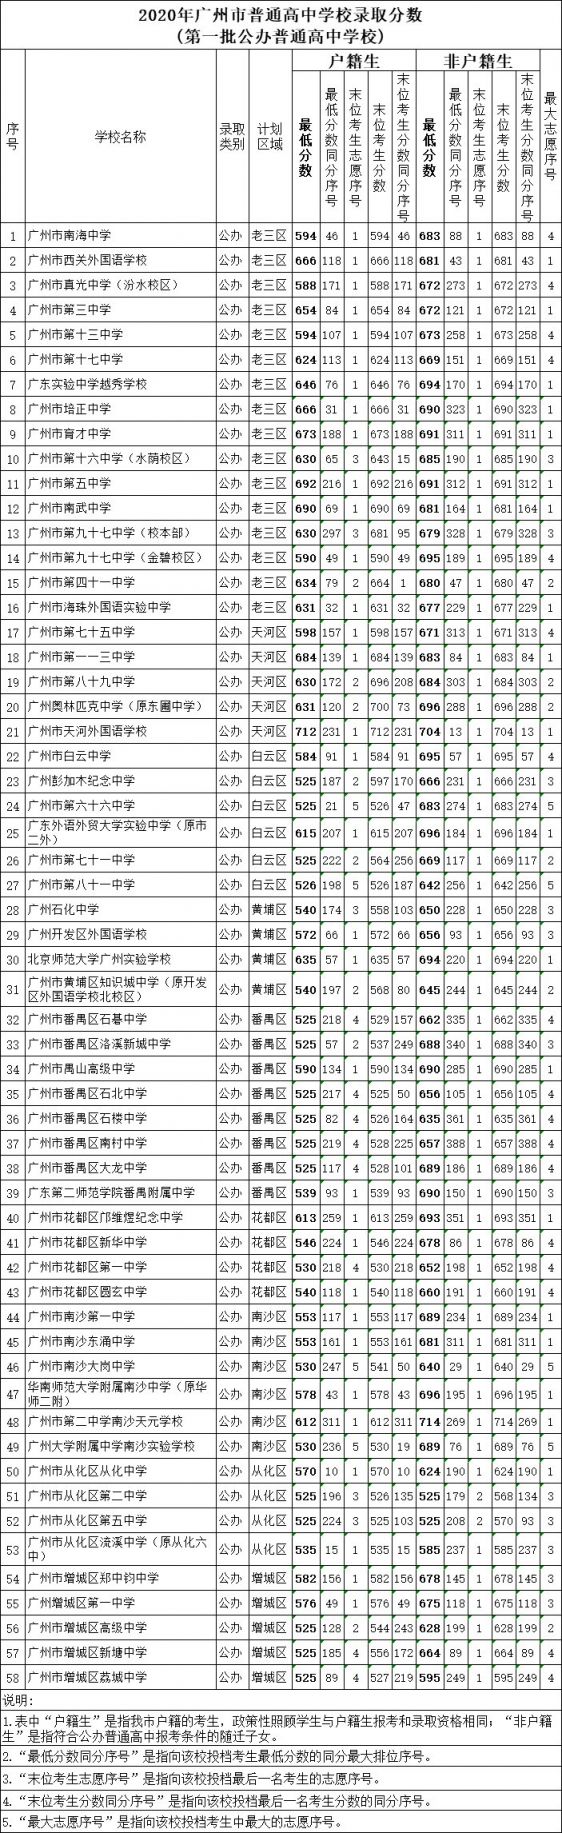 2020广州中考第一批录取分数线